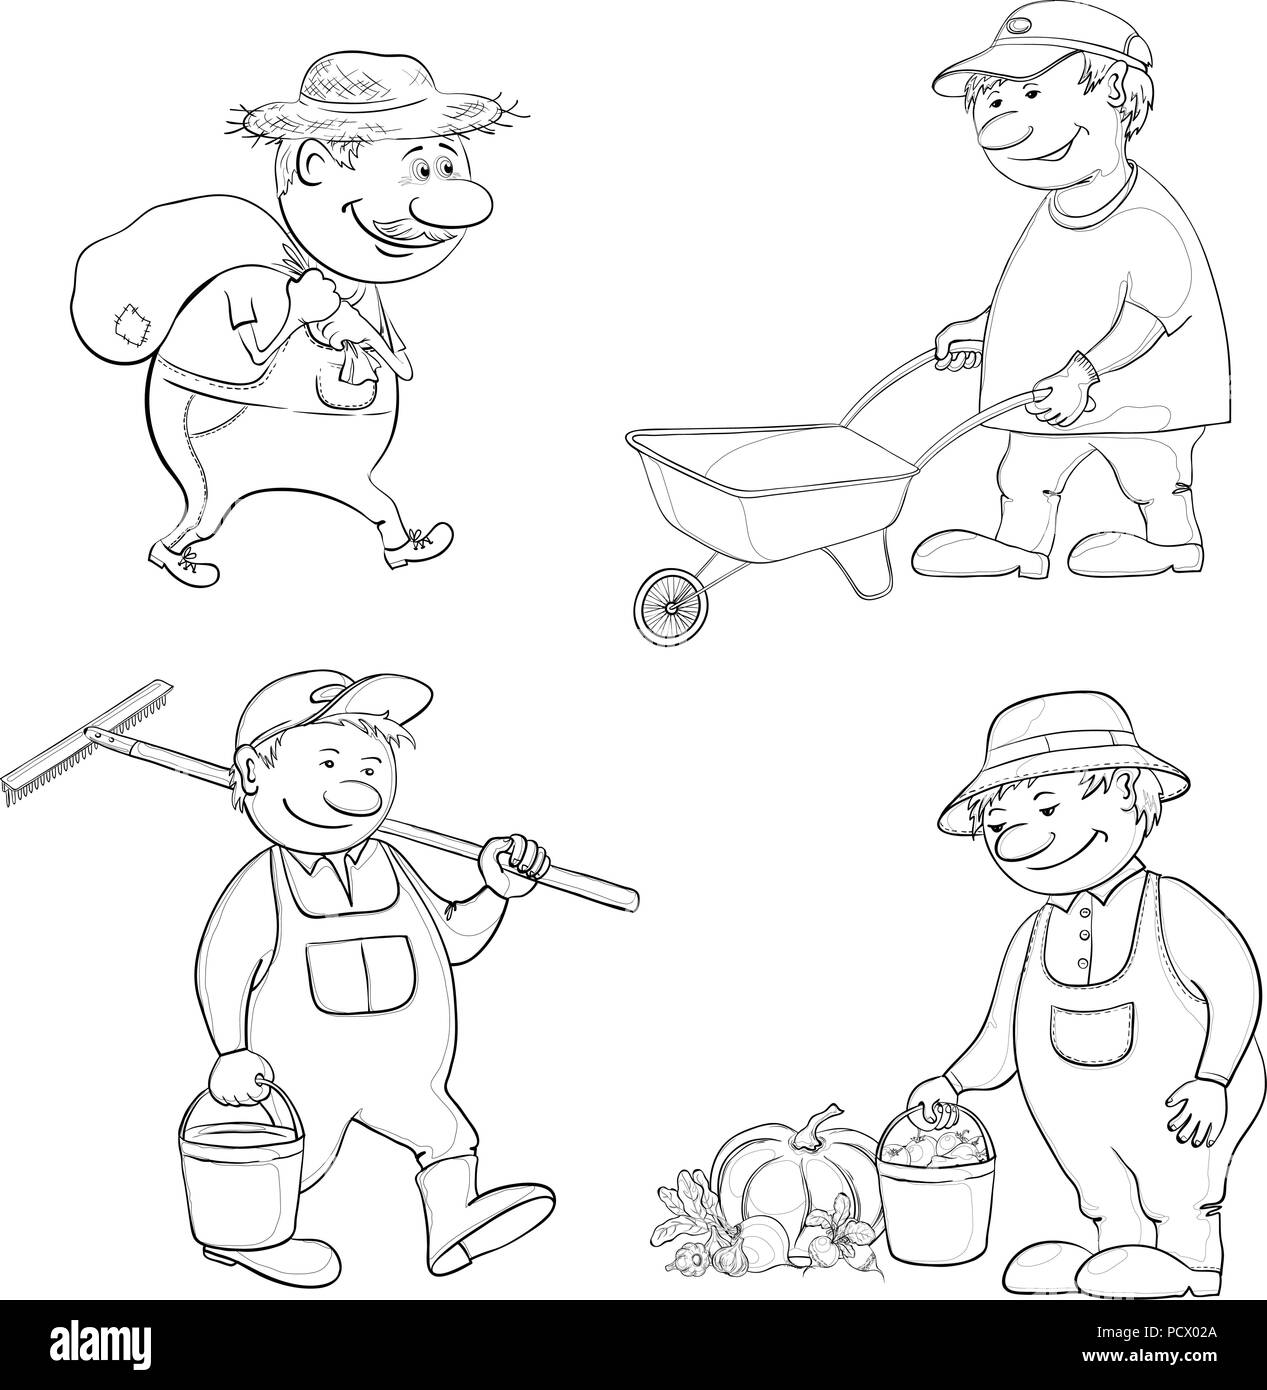 Cartoon Gärtner arbeiten, trägt einen Sack, trägt leeren Wagen, trägt eine Schaufel und Rechen, mit der Ernte von Gemüse. Schwarze Kontur auf weißem Hintergrund. Vektor Stock Vektor